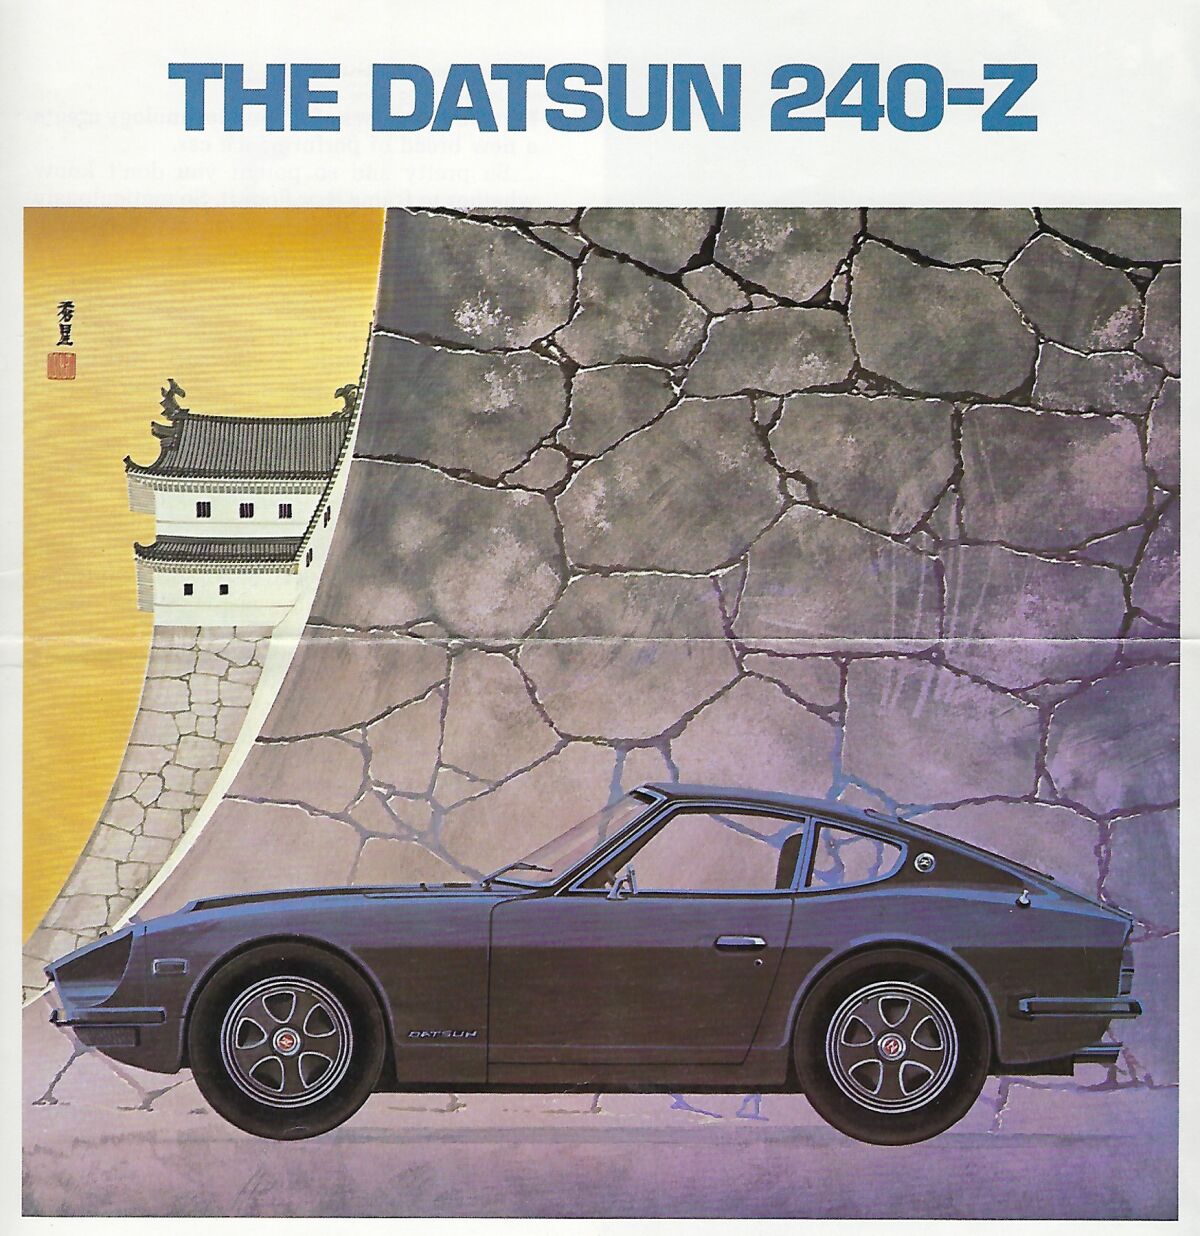 1972 Datsun 240-Z brochure cover